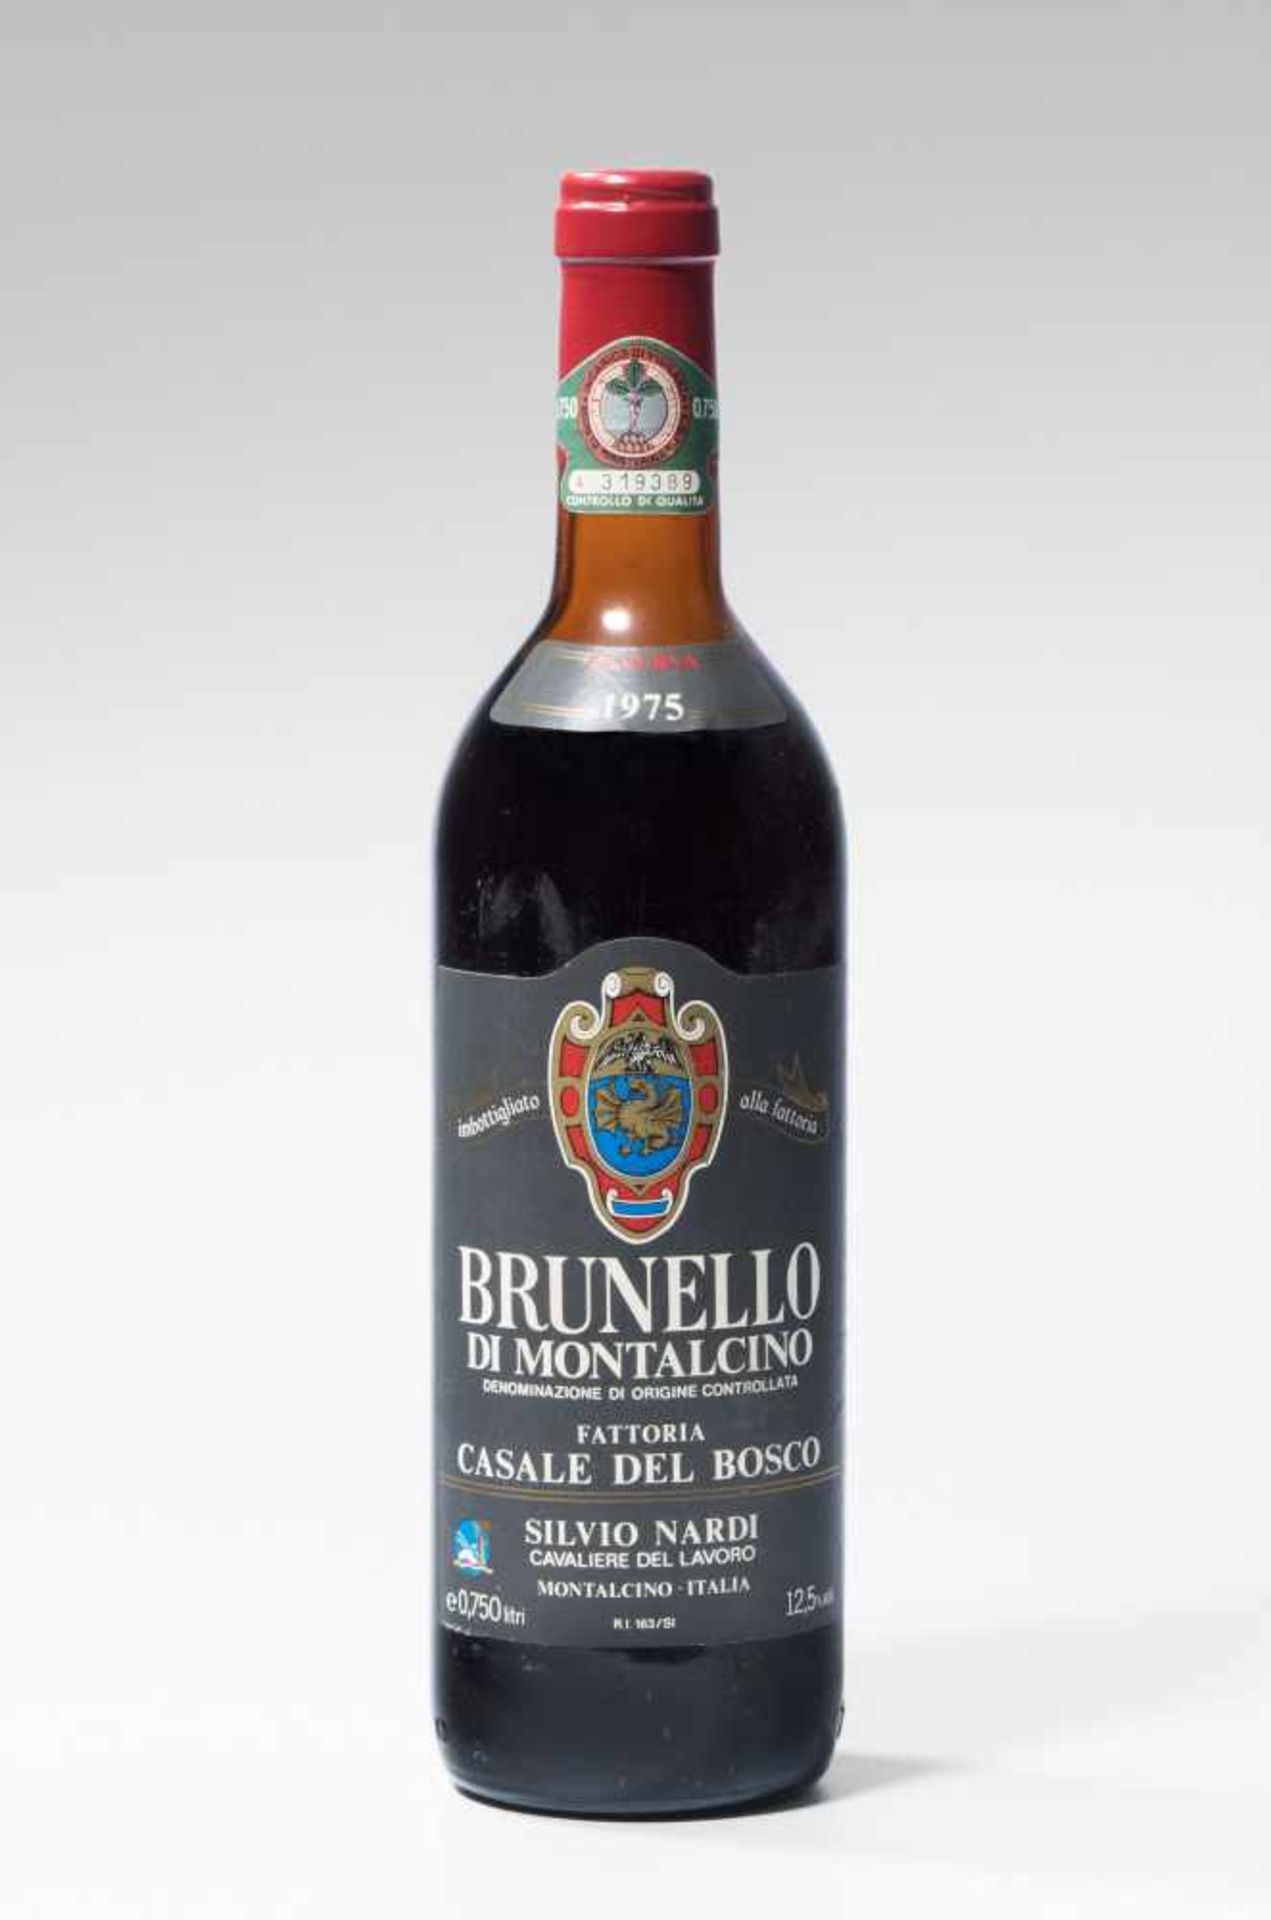 Brunello di Montalcino1975. Fattoria Casale del Bosco. Nardi. 12 Flaschen.